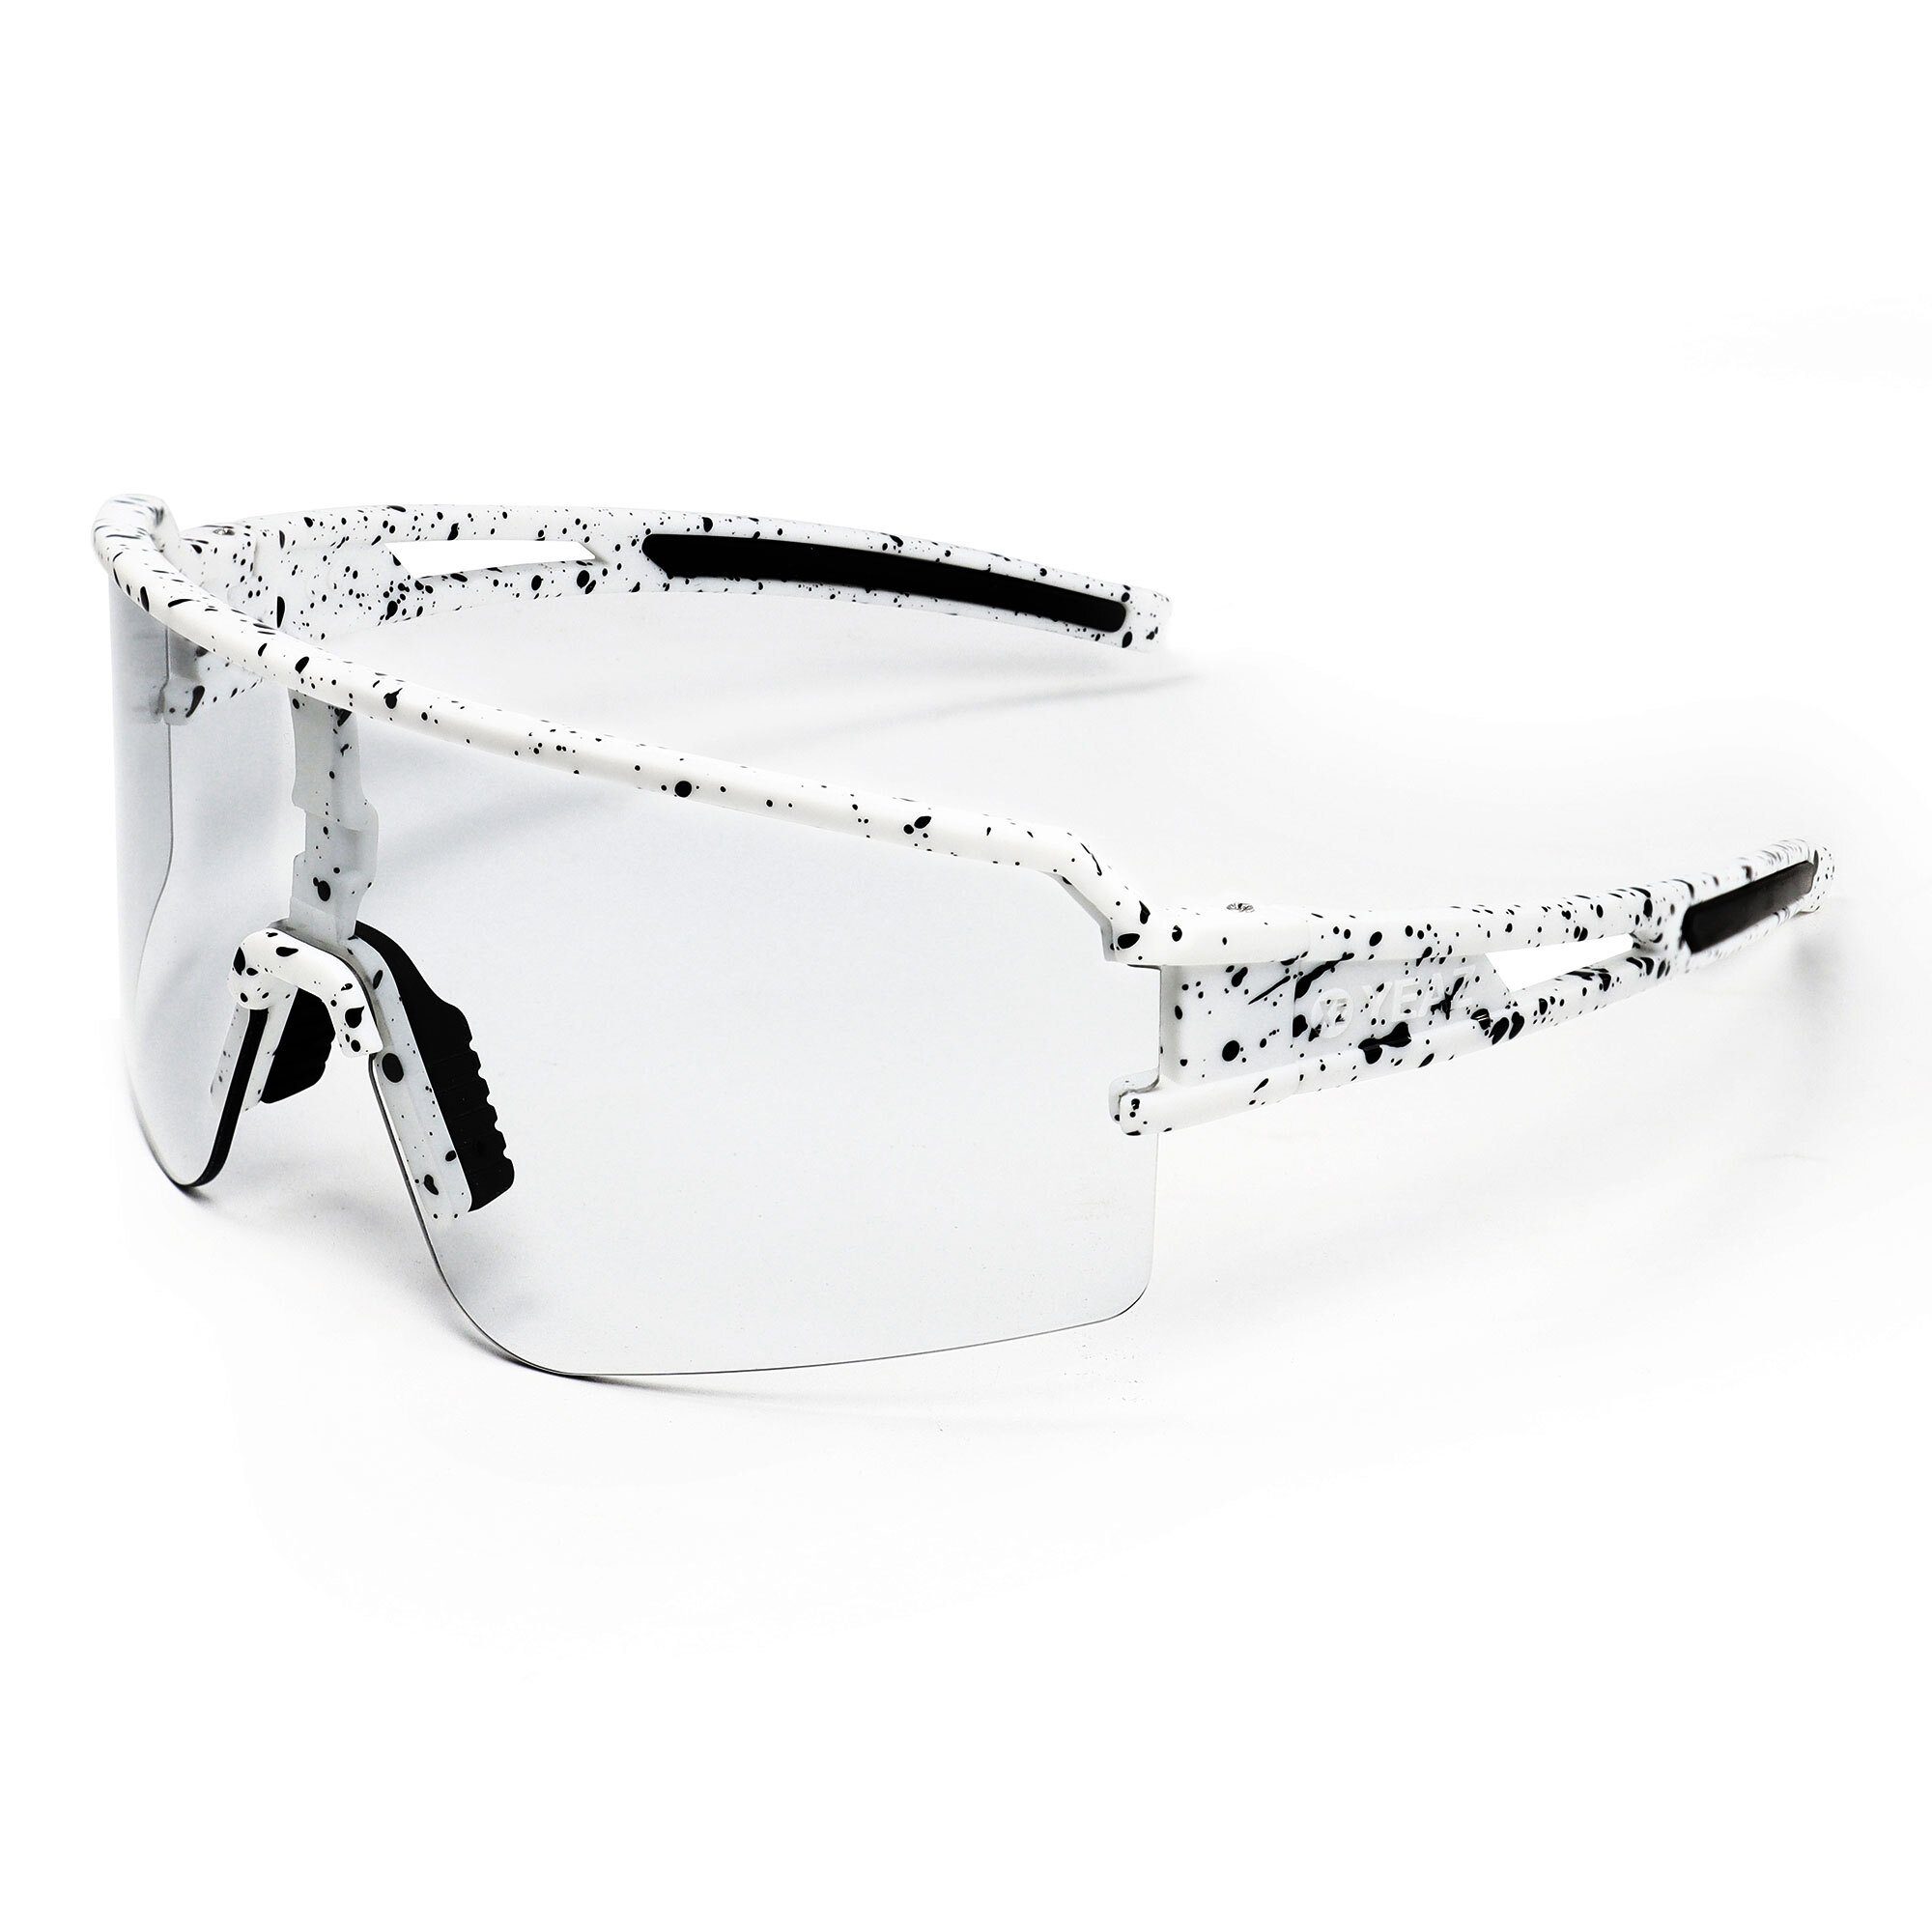 YEAZ Sportbrille SUNSPOT sport-sonnenbrille weiß/transparent, Sport-Sonnenbrille